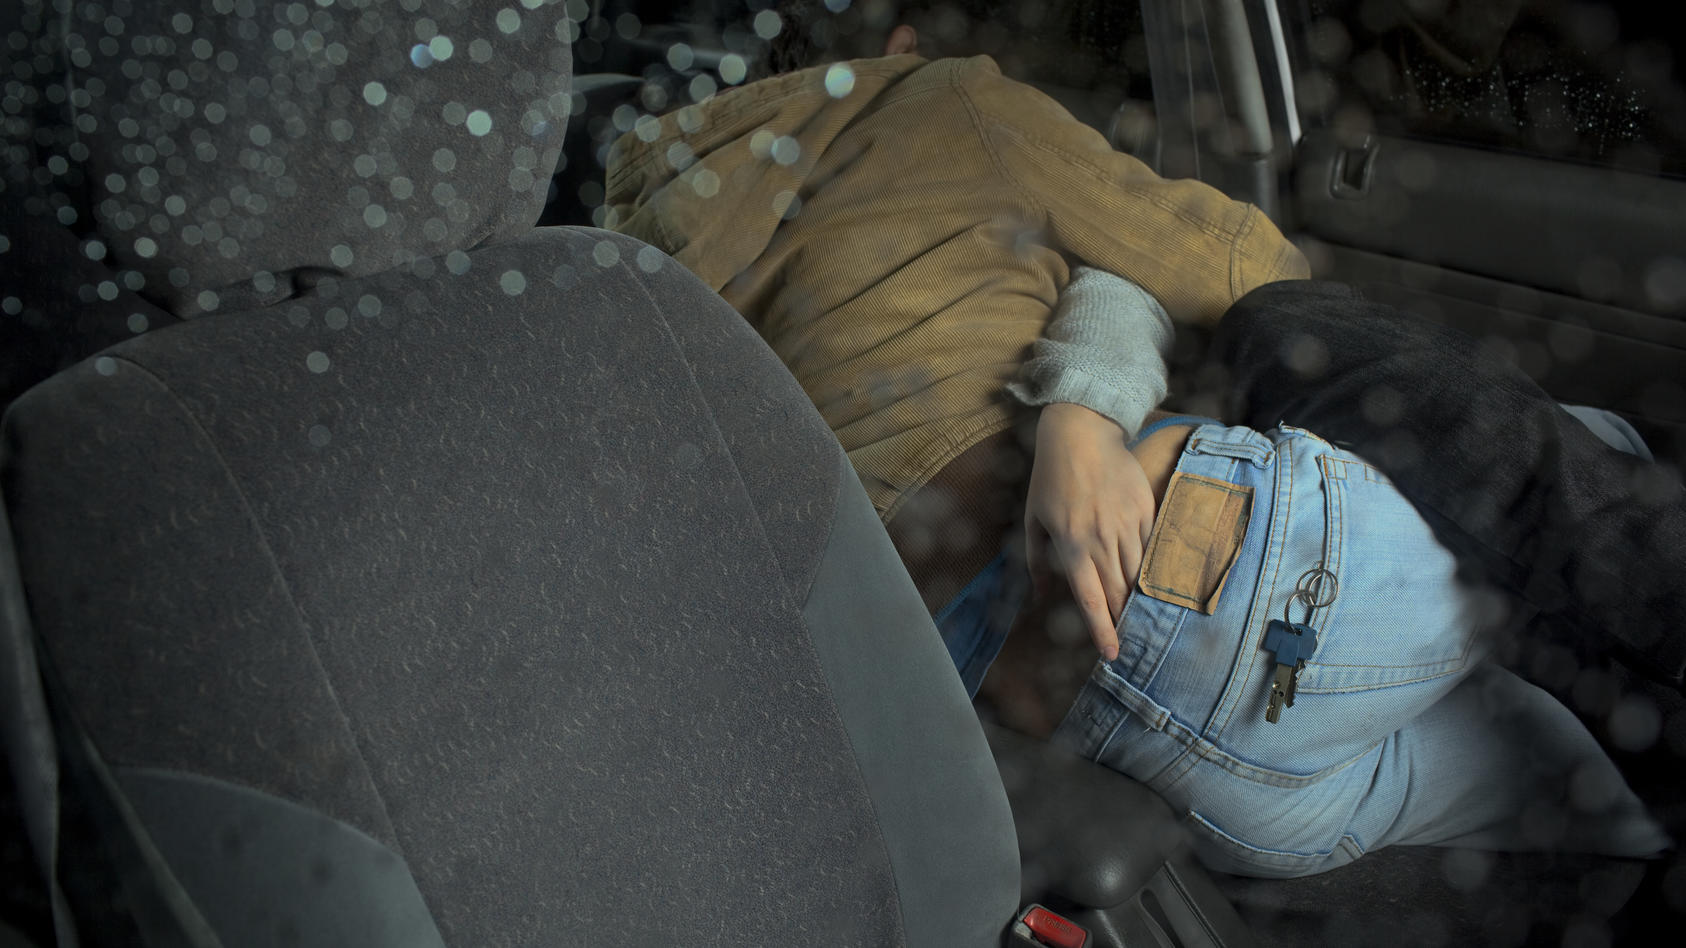 Ein Spanner filmte das Paar, das sich gerade beim Liebesakt im Auto vergnügte. (Symbolbild)